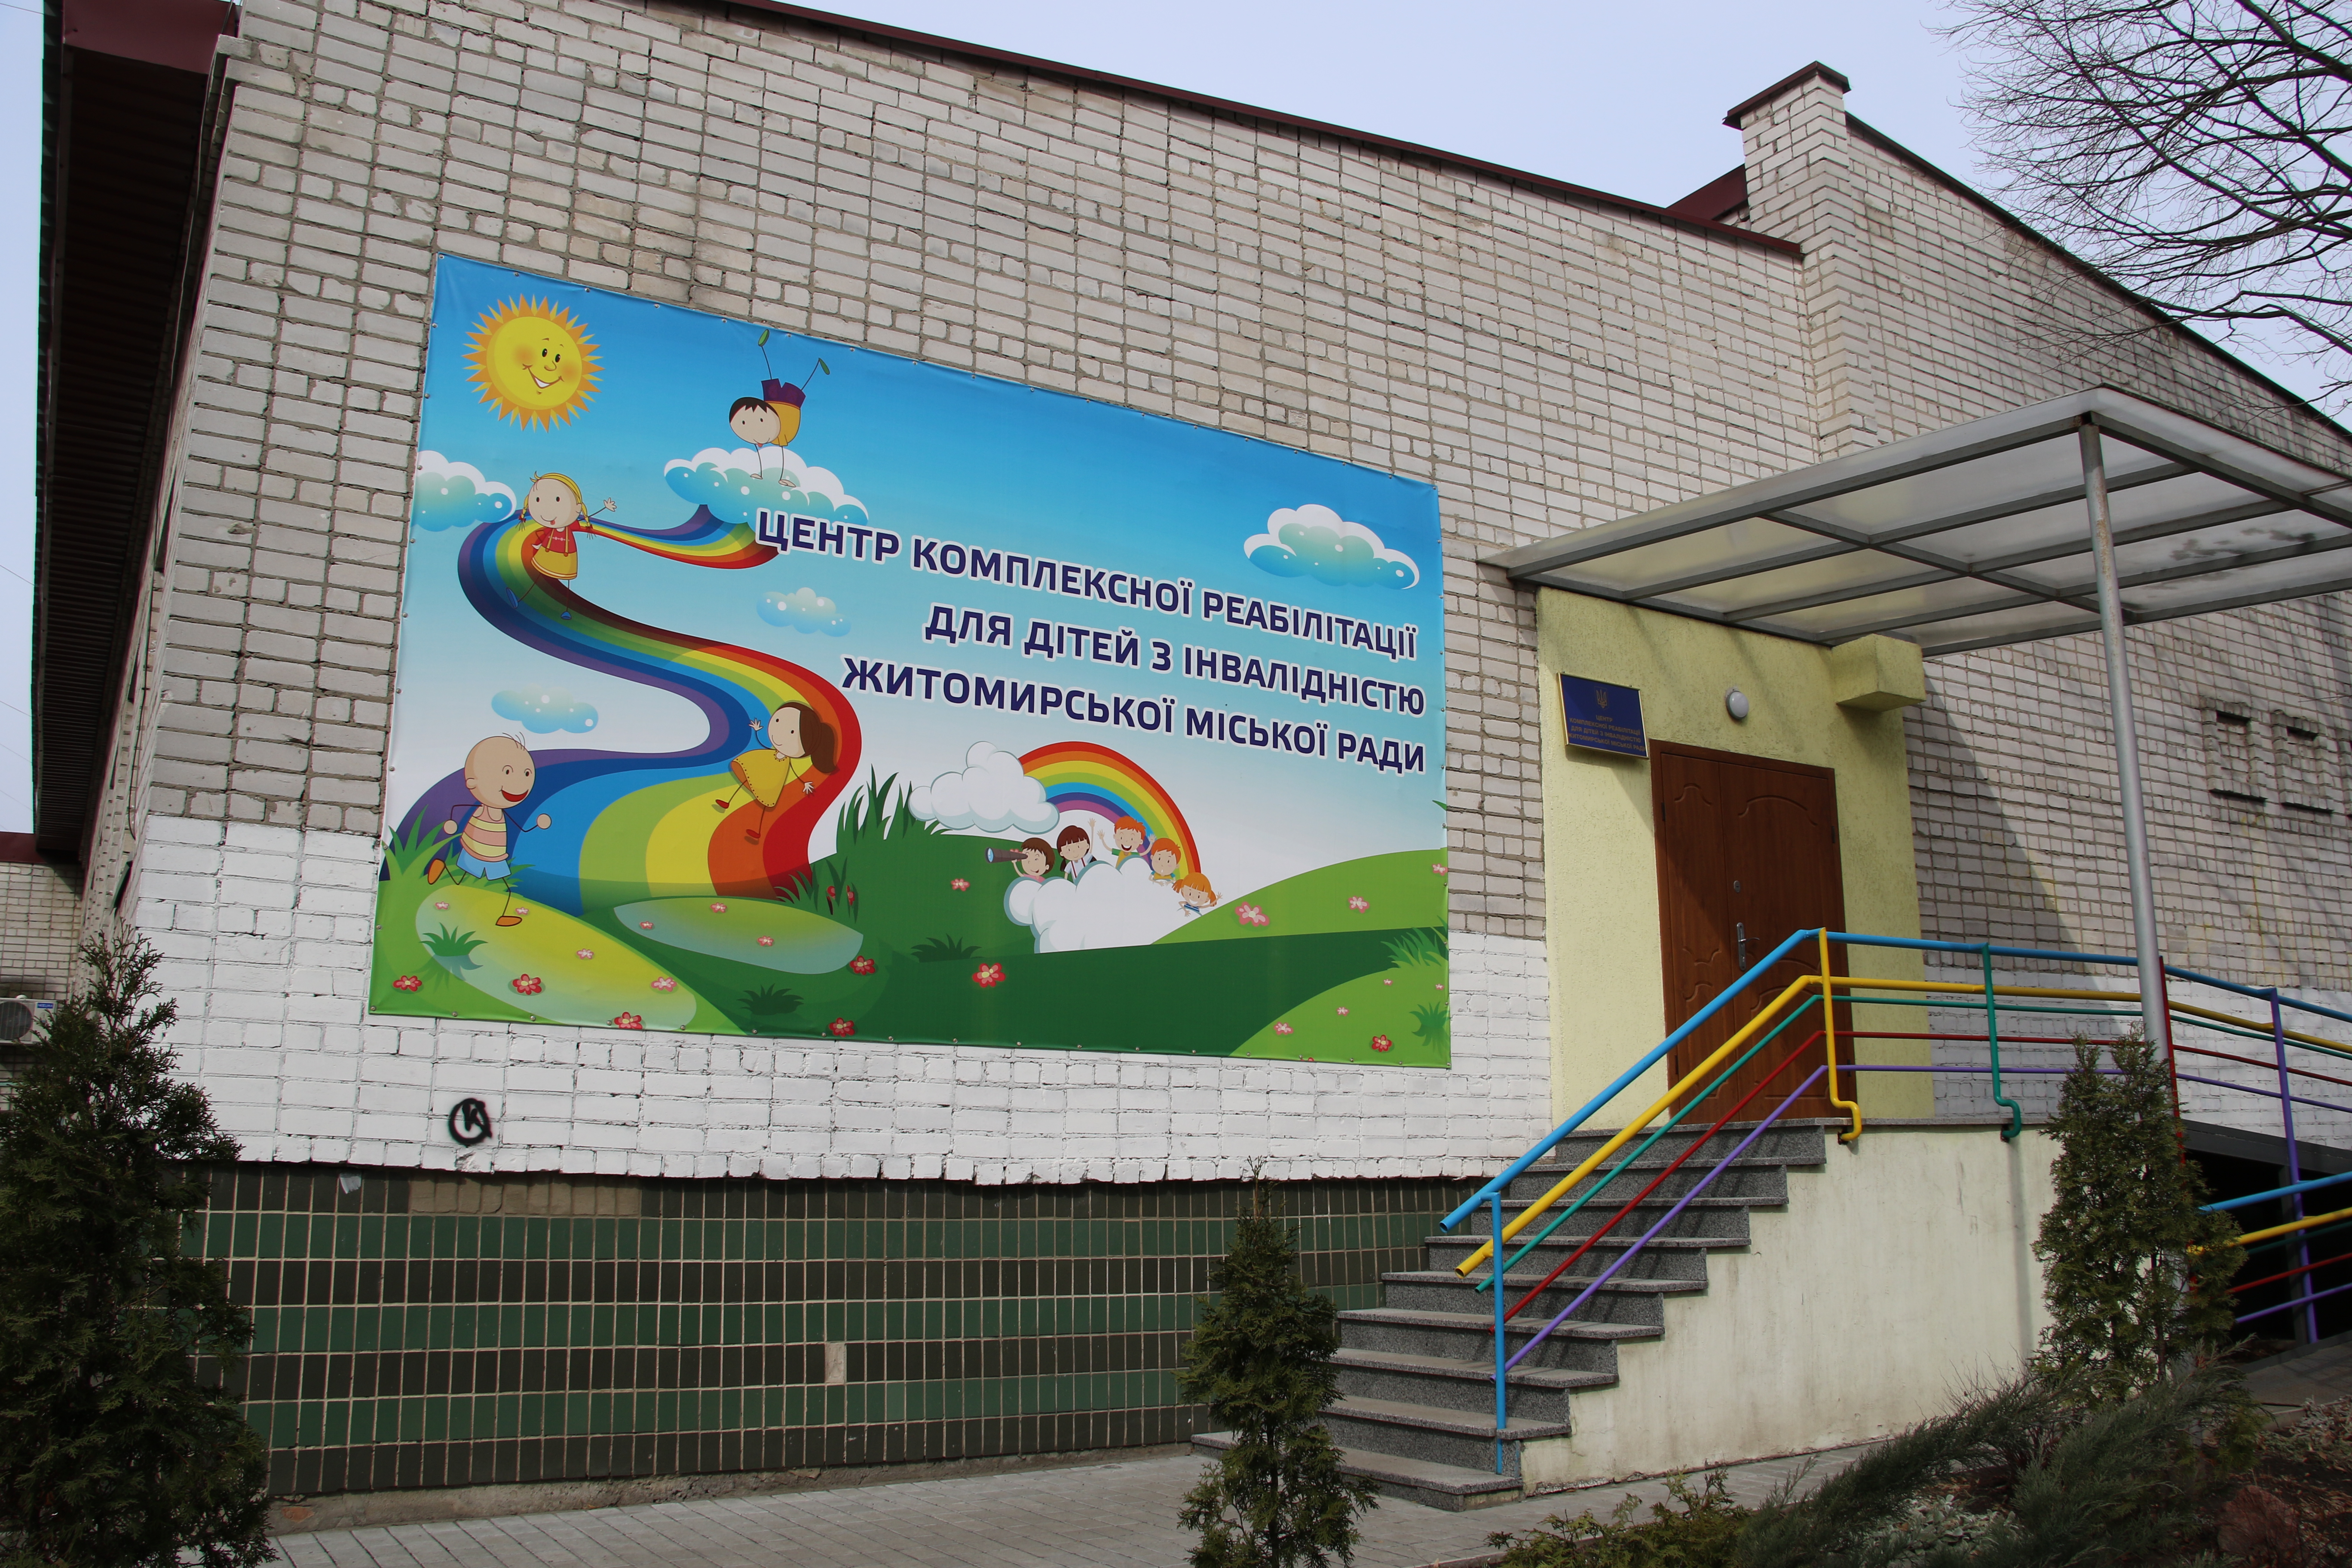 22 травня Центр комплексної реабілітації дітей з інвалідністю Житомирської міської ради відзначить 7 річницю з дня відкриття